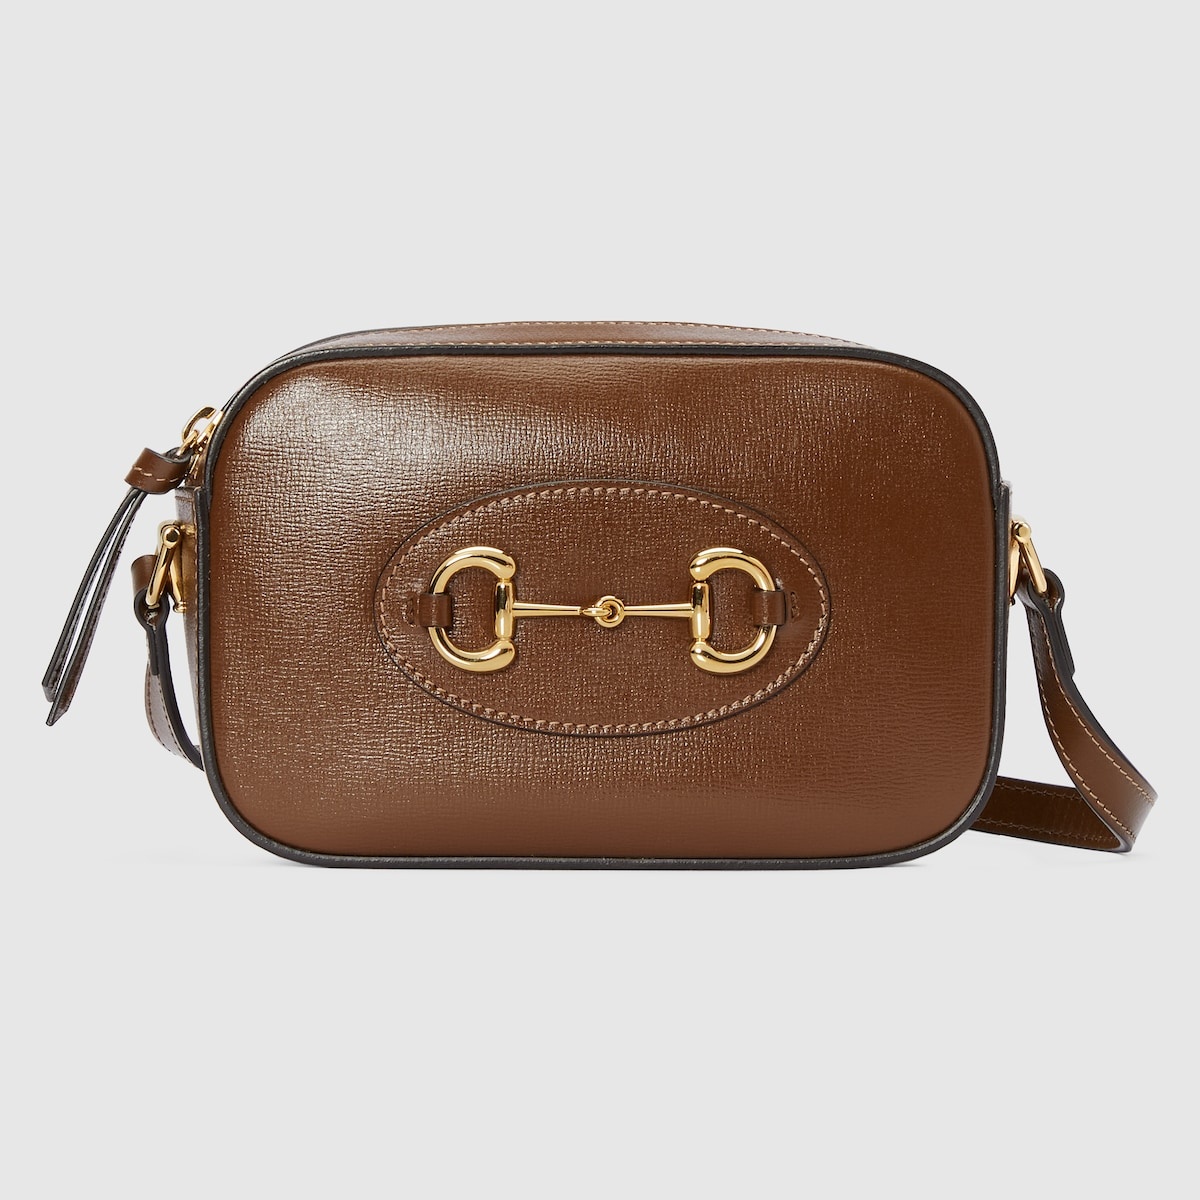 Gucci Horsebit 1955 small shoulder bag - 1